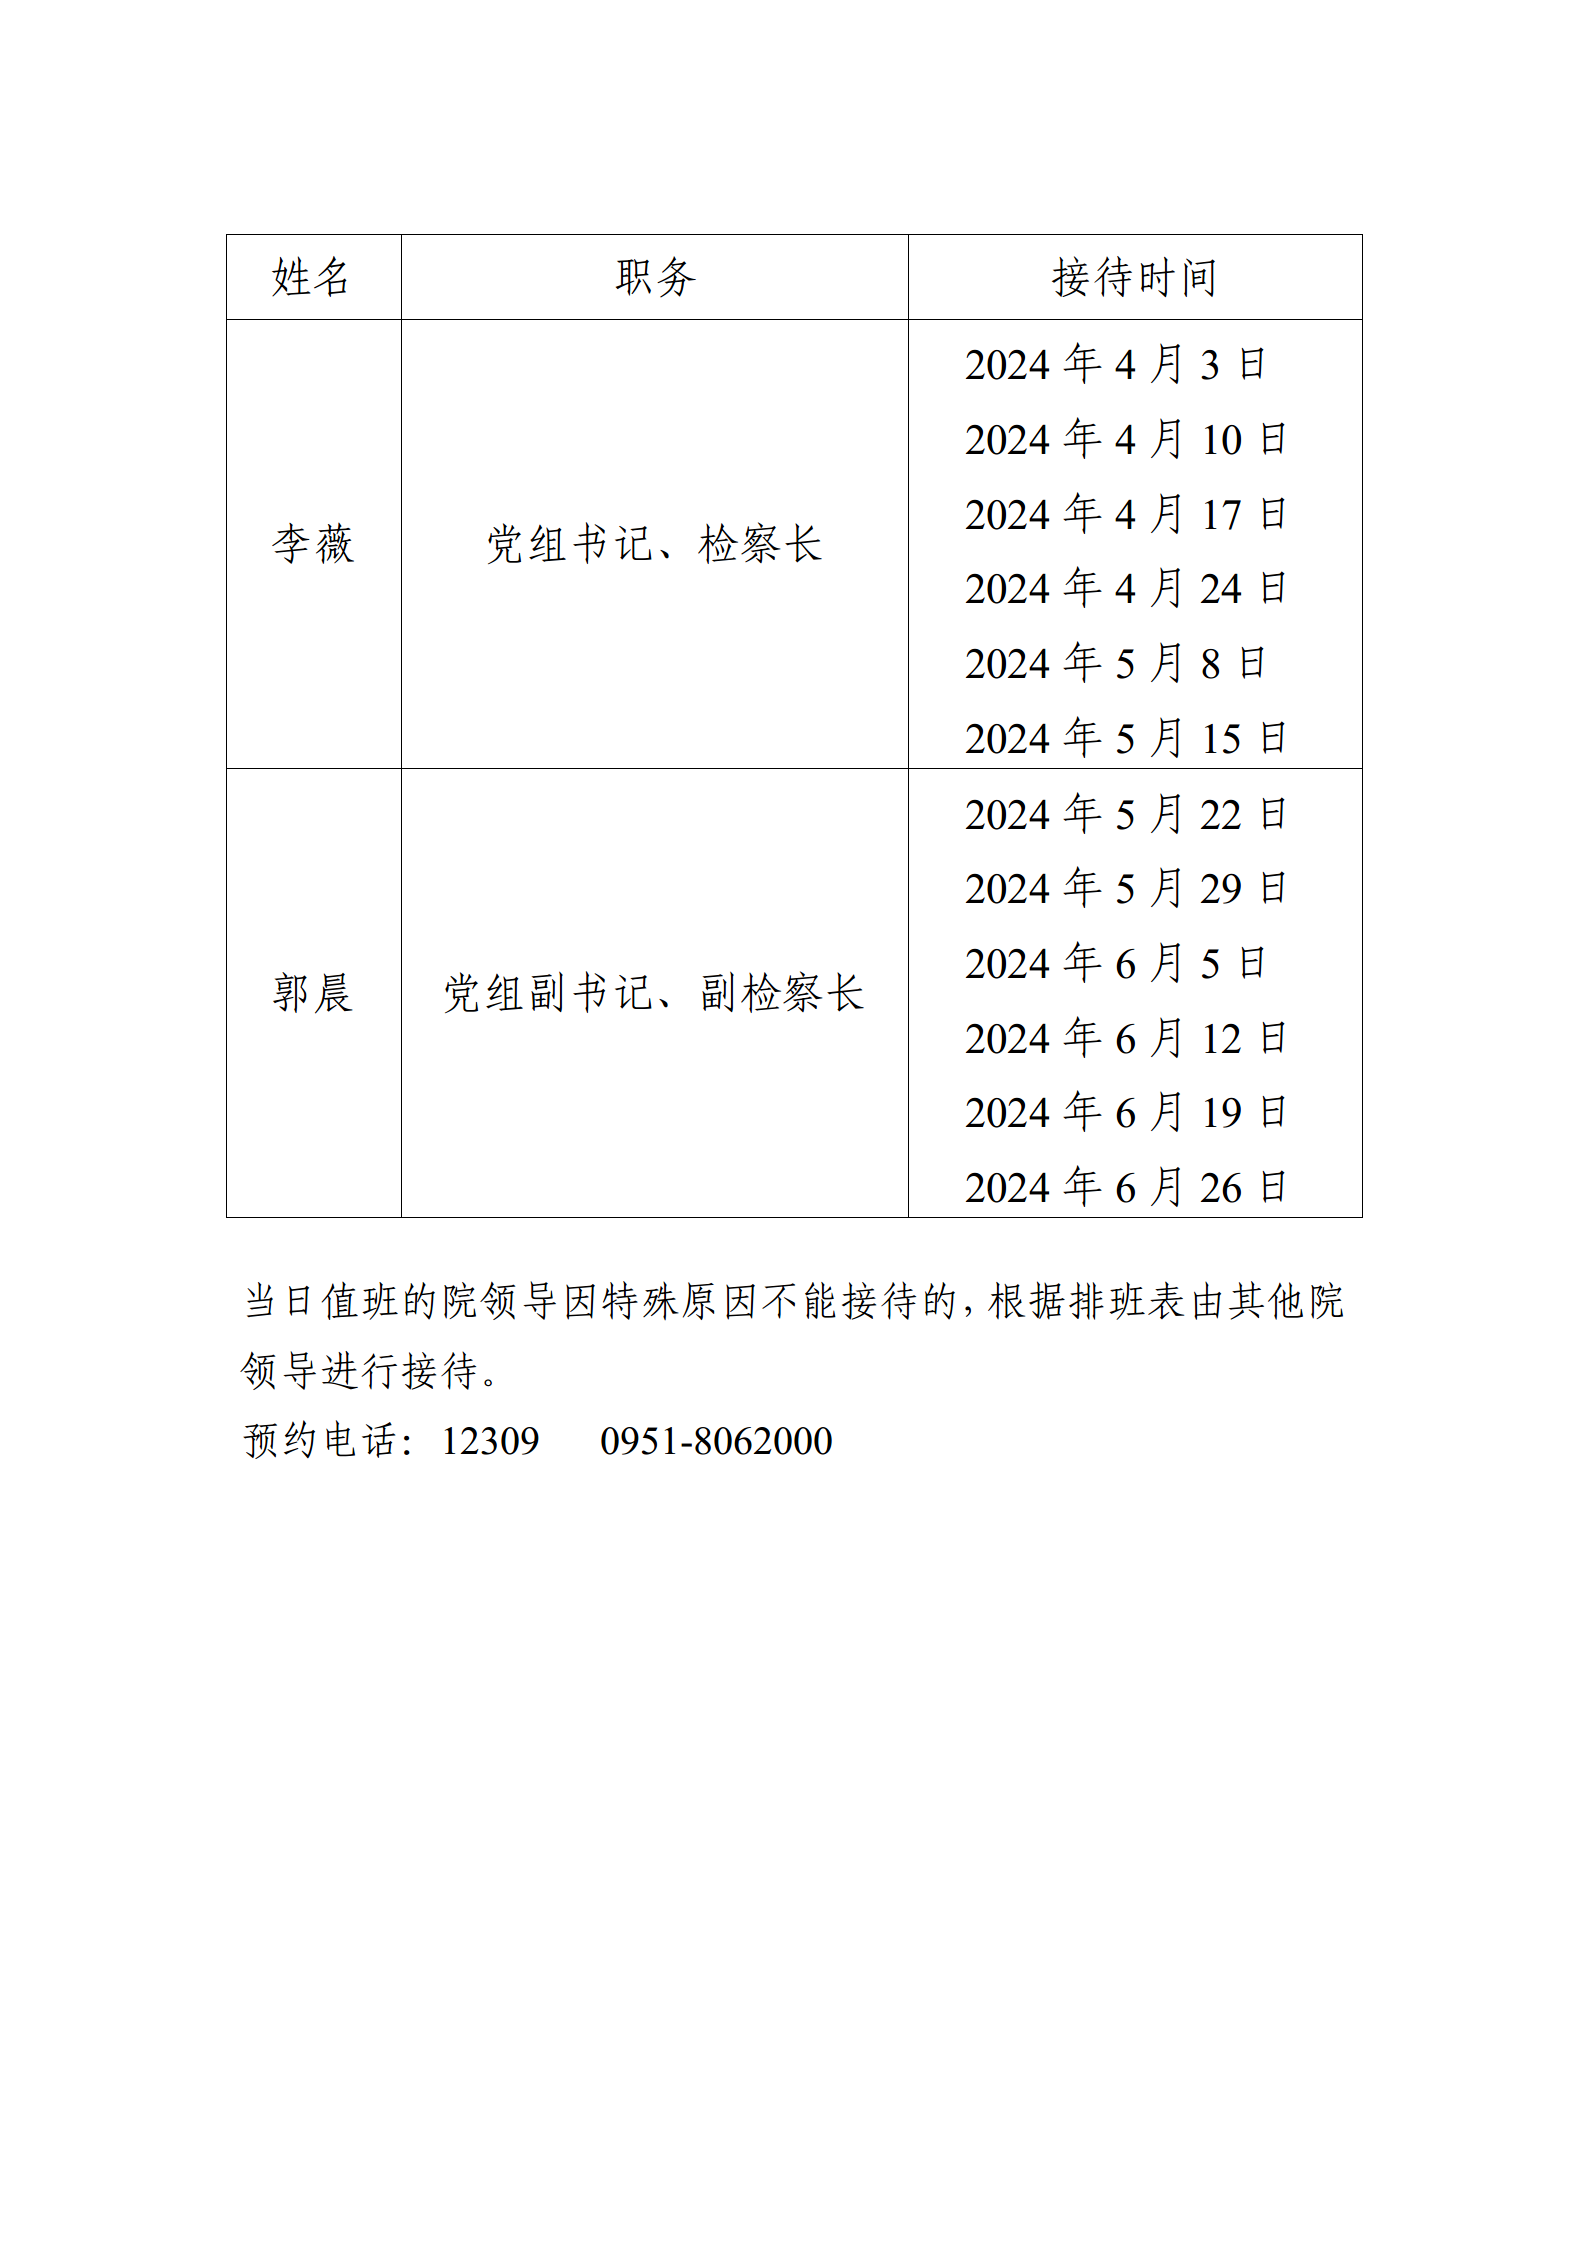 2024年第二季度检察长接待日时间安排表 (wu)01.png